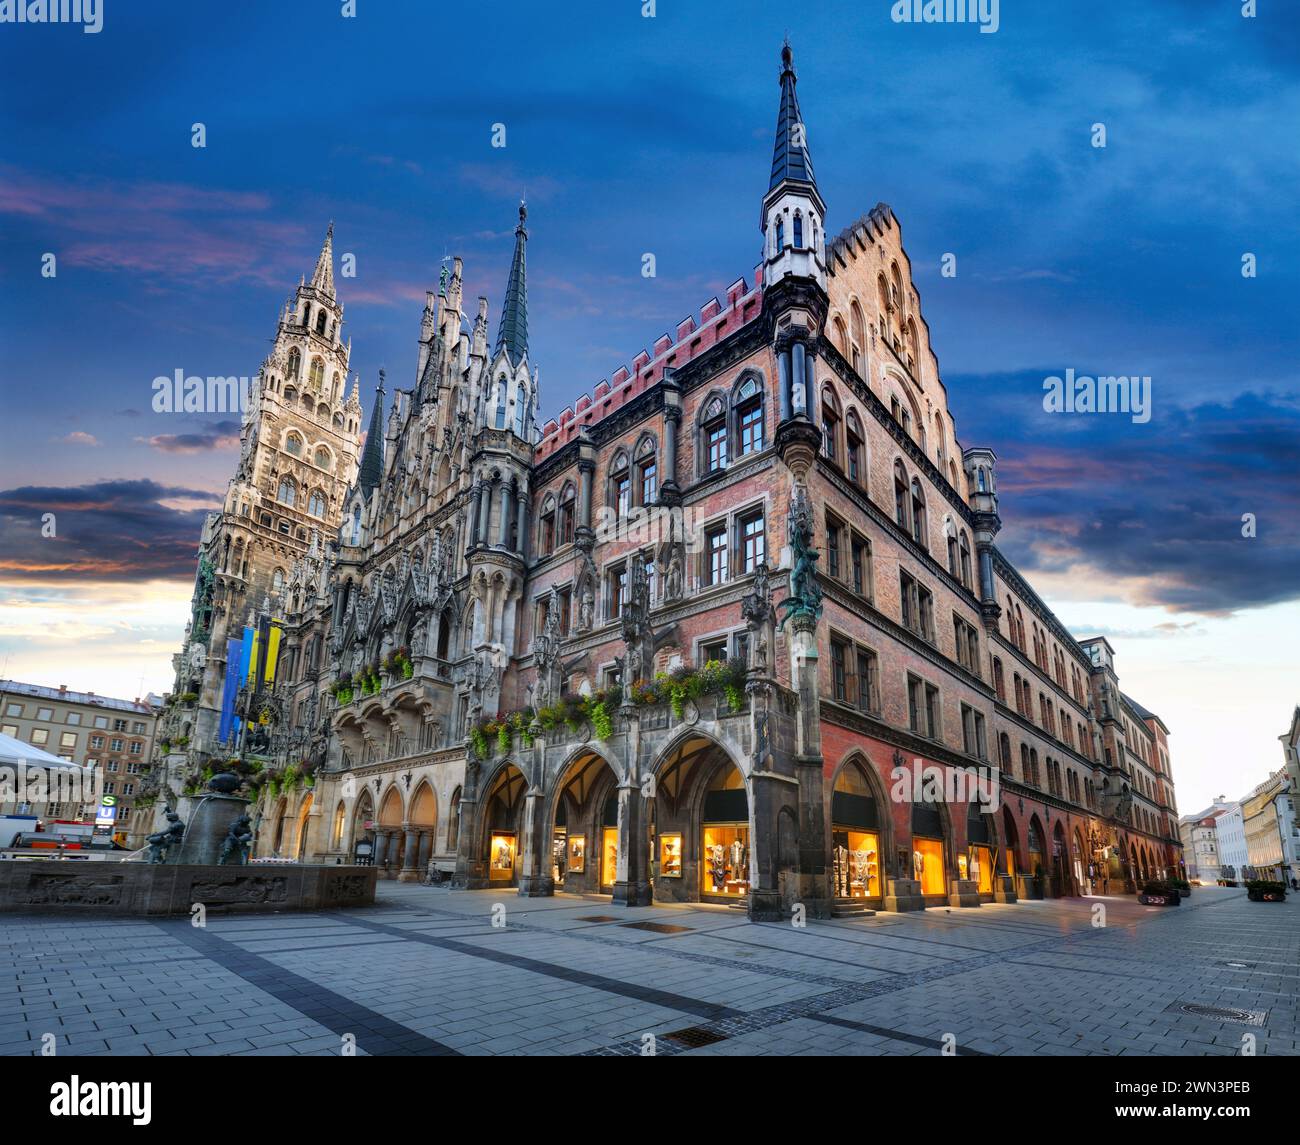 Munich. Image du paysage urbain de la place Marien ( Marienplatz ) à Munich, Allemagne pendant l'heure bleue du crépuscule. Banque D'Images